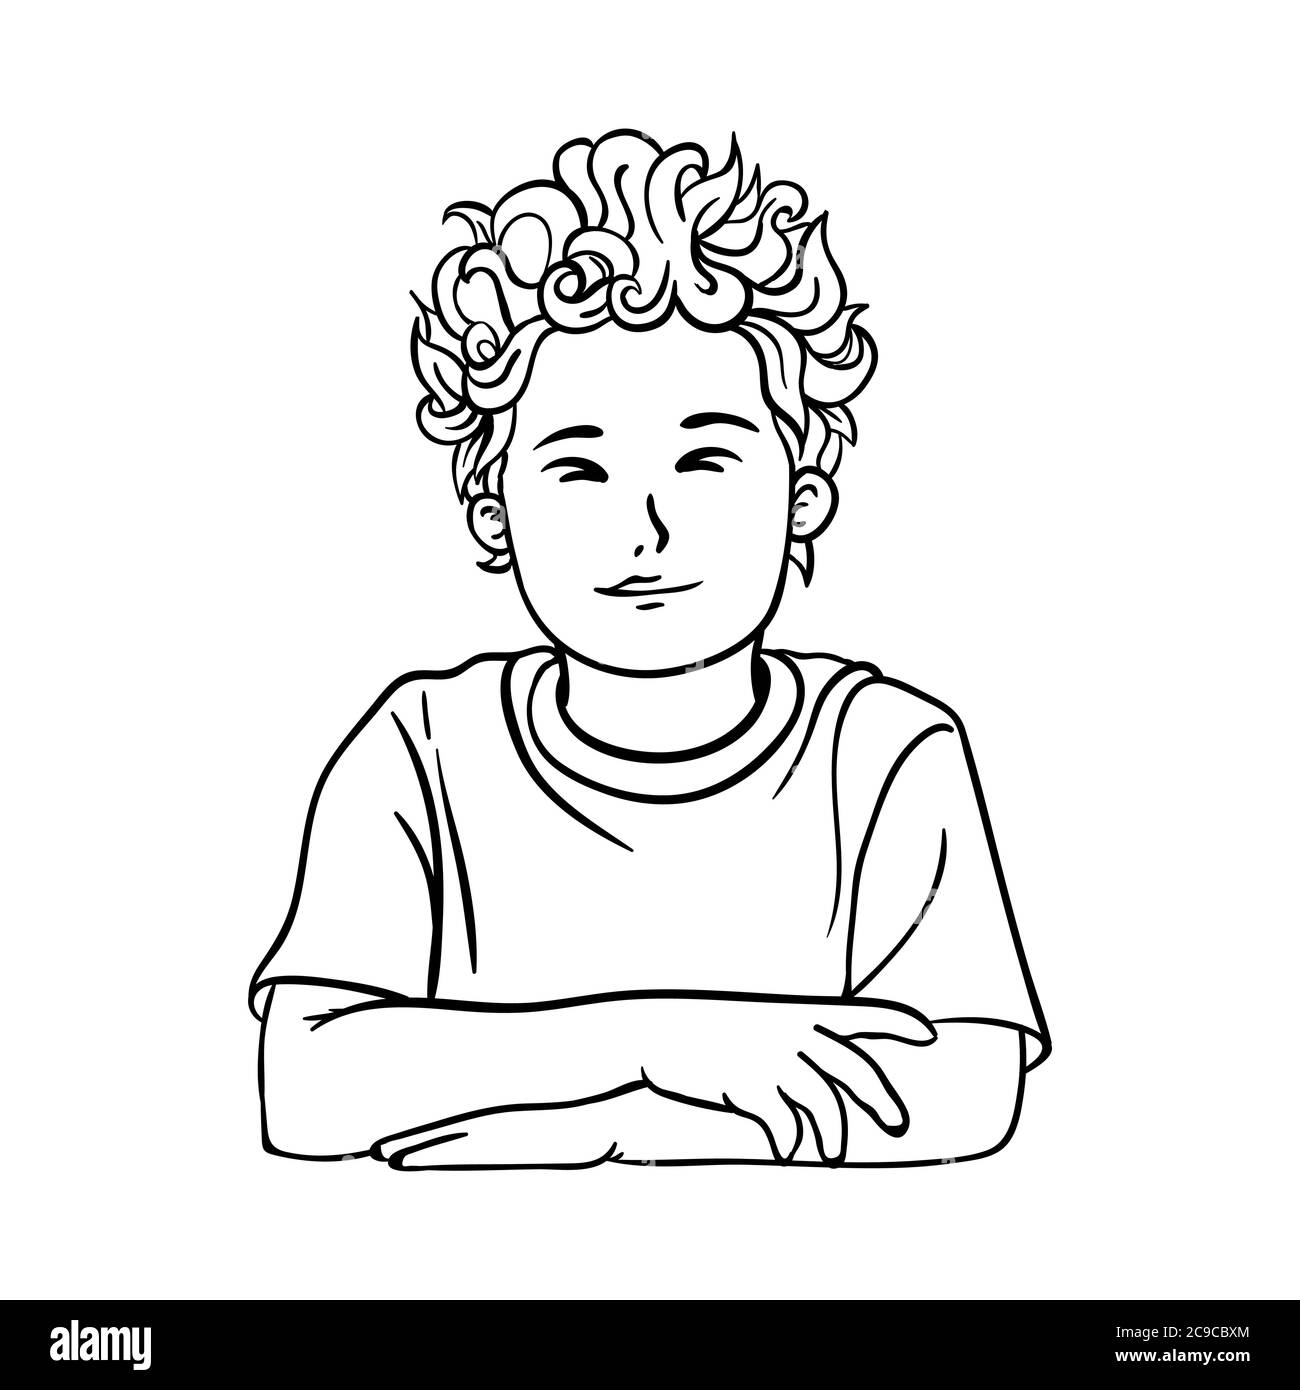 Image de contour d'un garçon, d'un garçon d'école avec des cheveux bouclés dans un T-shirt Illustration de Vecteur